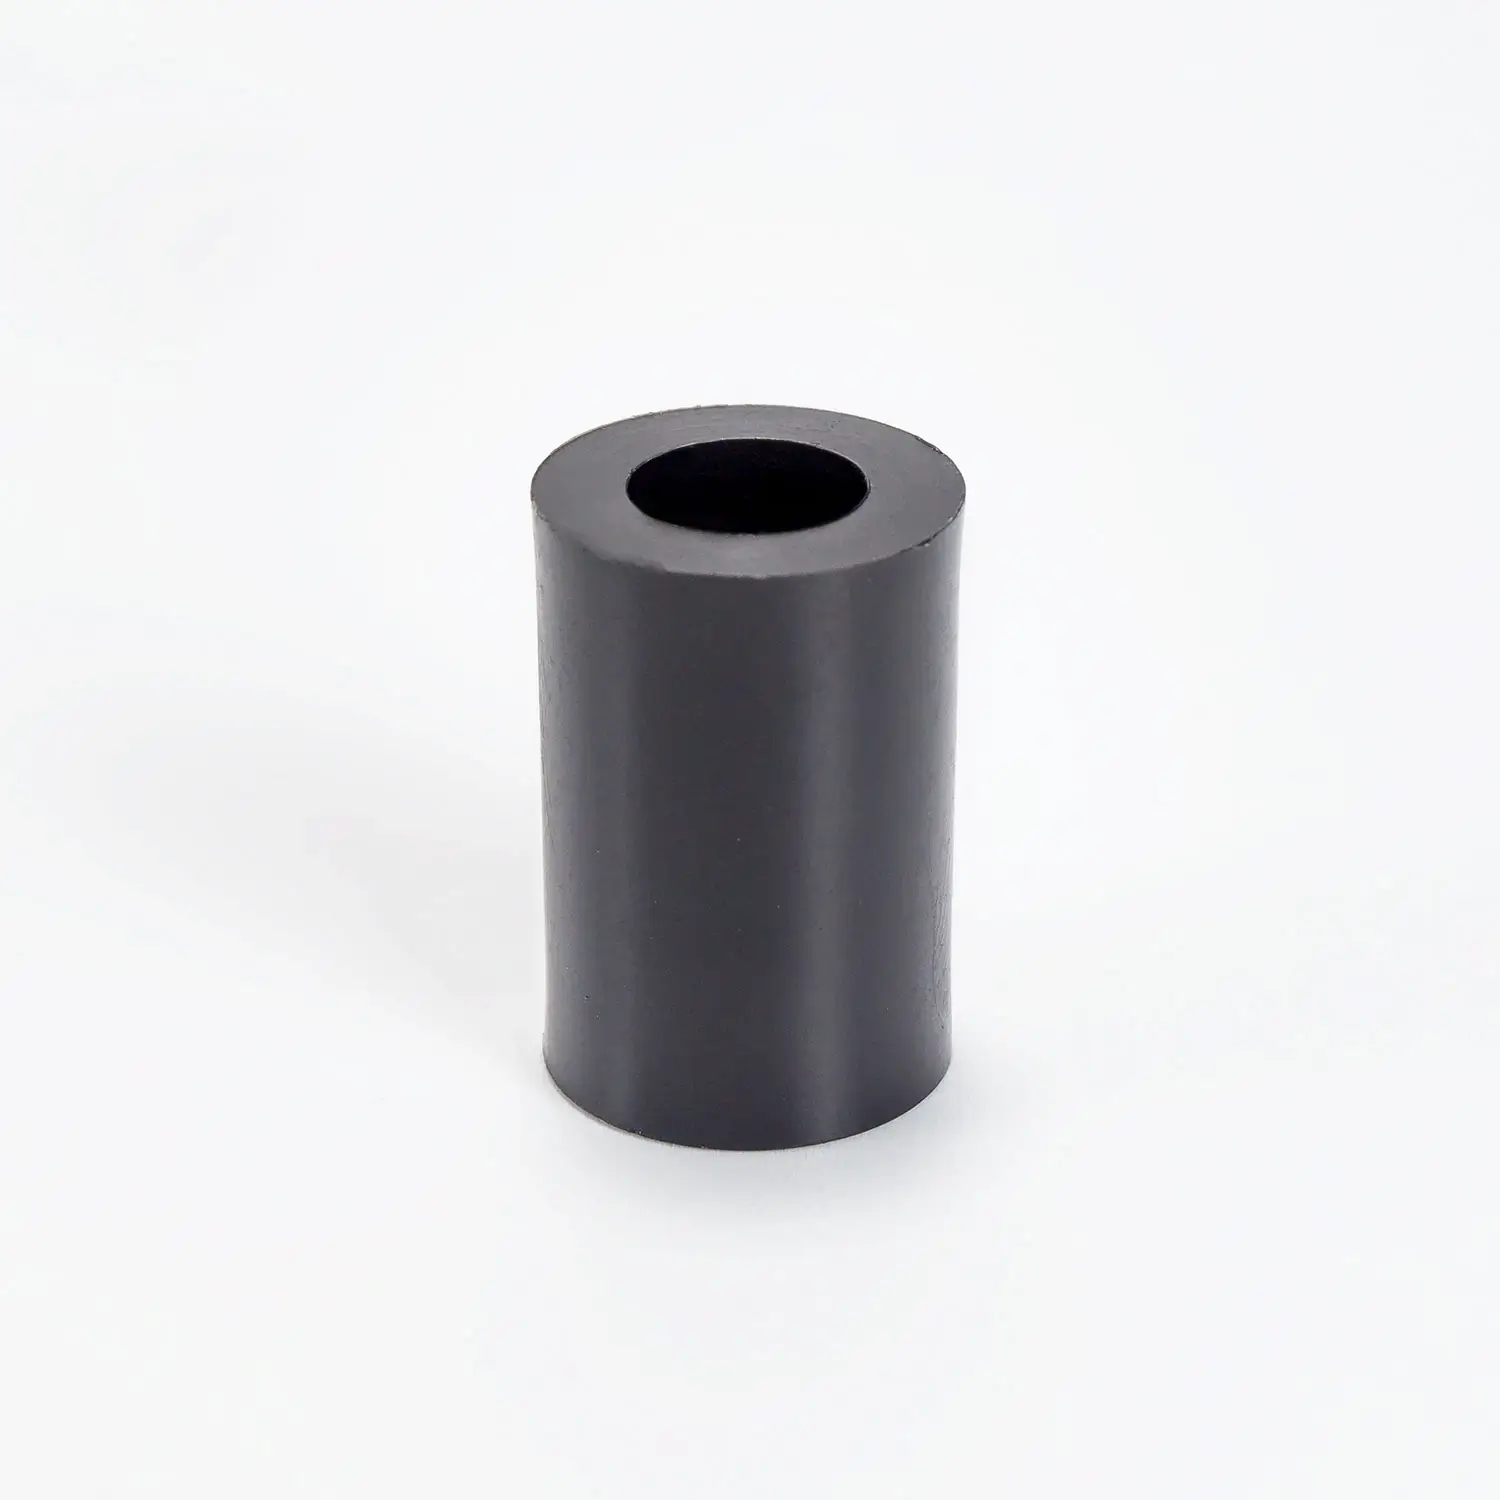 Distanzhülse Kunststoff schwarz 18mm